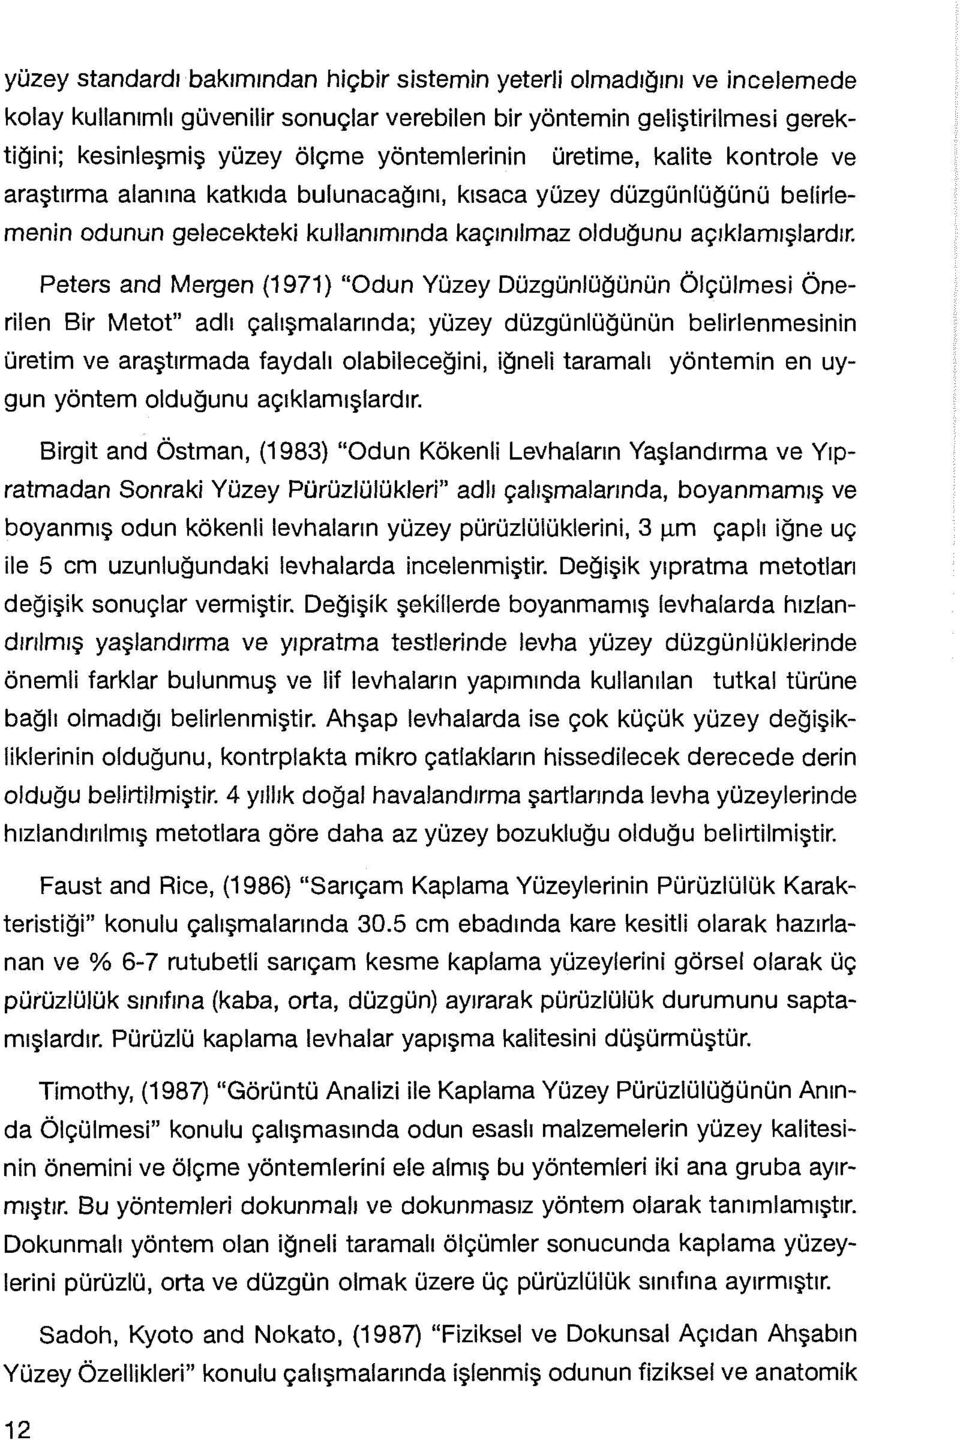 Peters and Mergen (1971) "Odun Yüzey Düzgünlüğünün Ölçülmesi Önerilen Bir Metot" adlı çalışmalarında; yüzey düzgünlüğünün belirlenmesinin üretim ve araştırmada faydalı olabileceğini, iğneli tararnalı